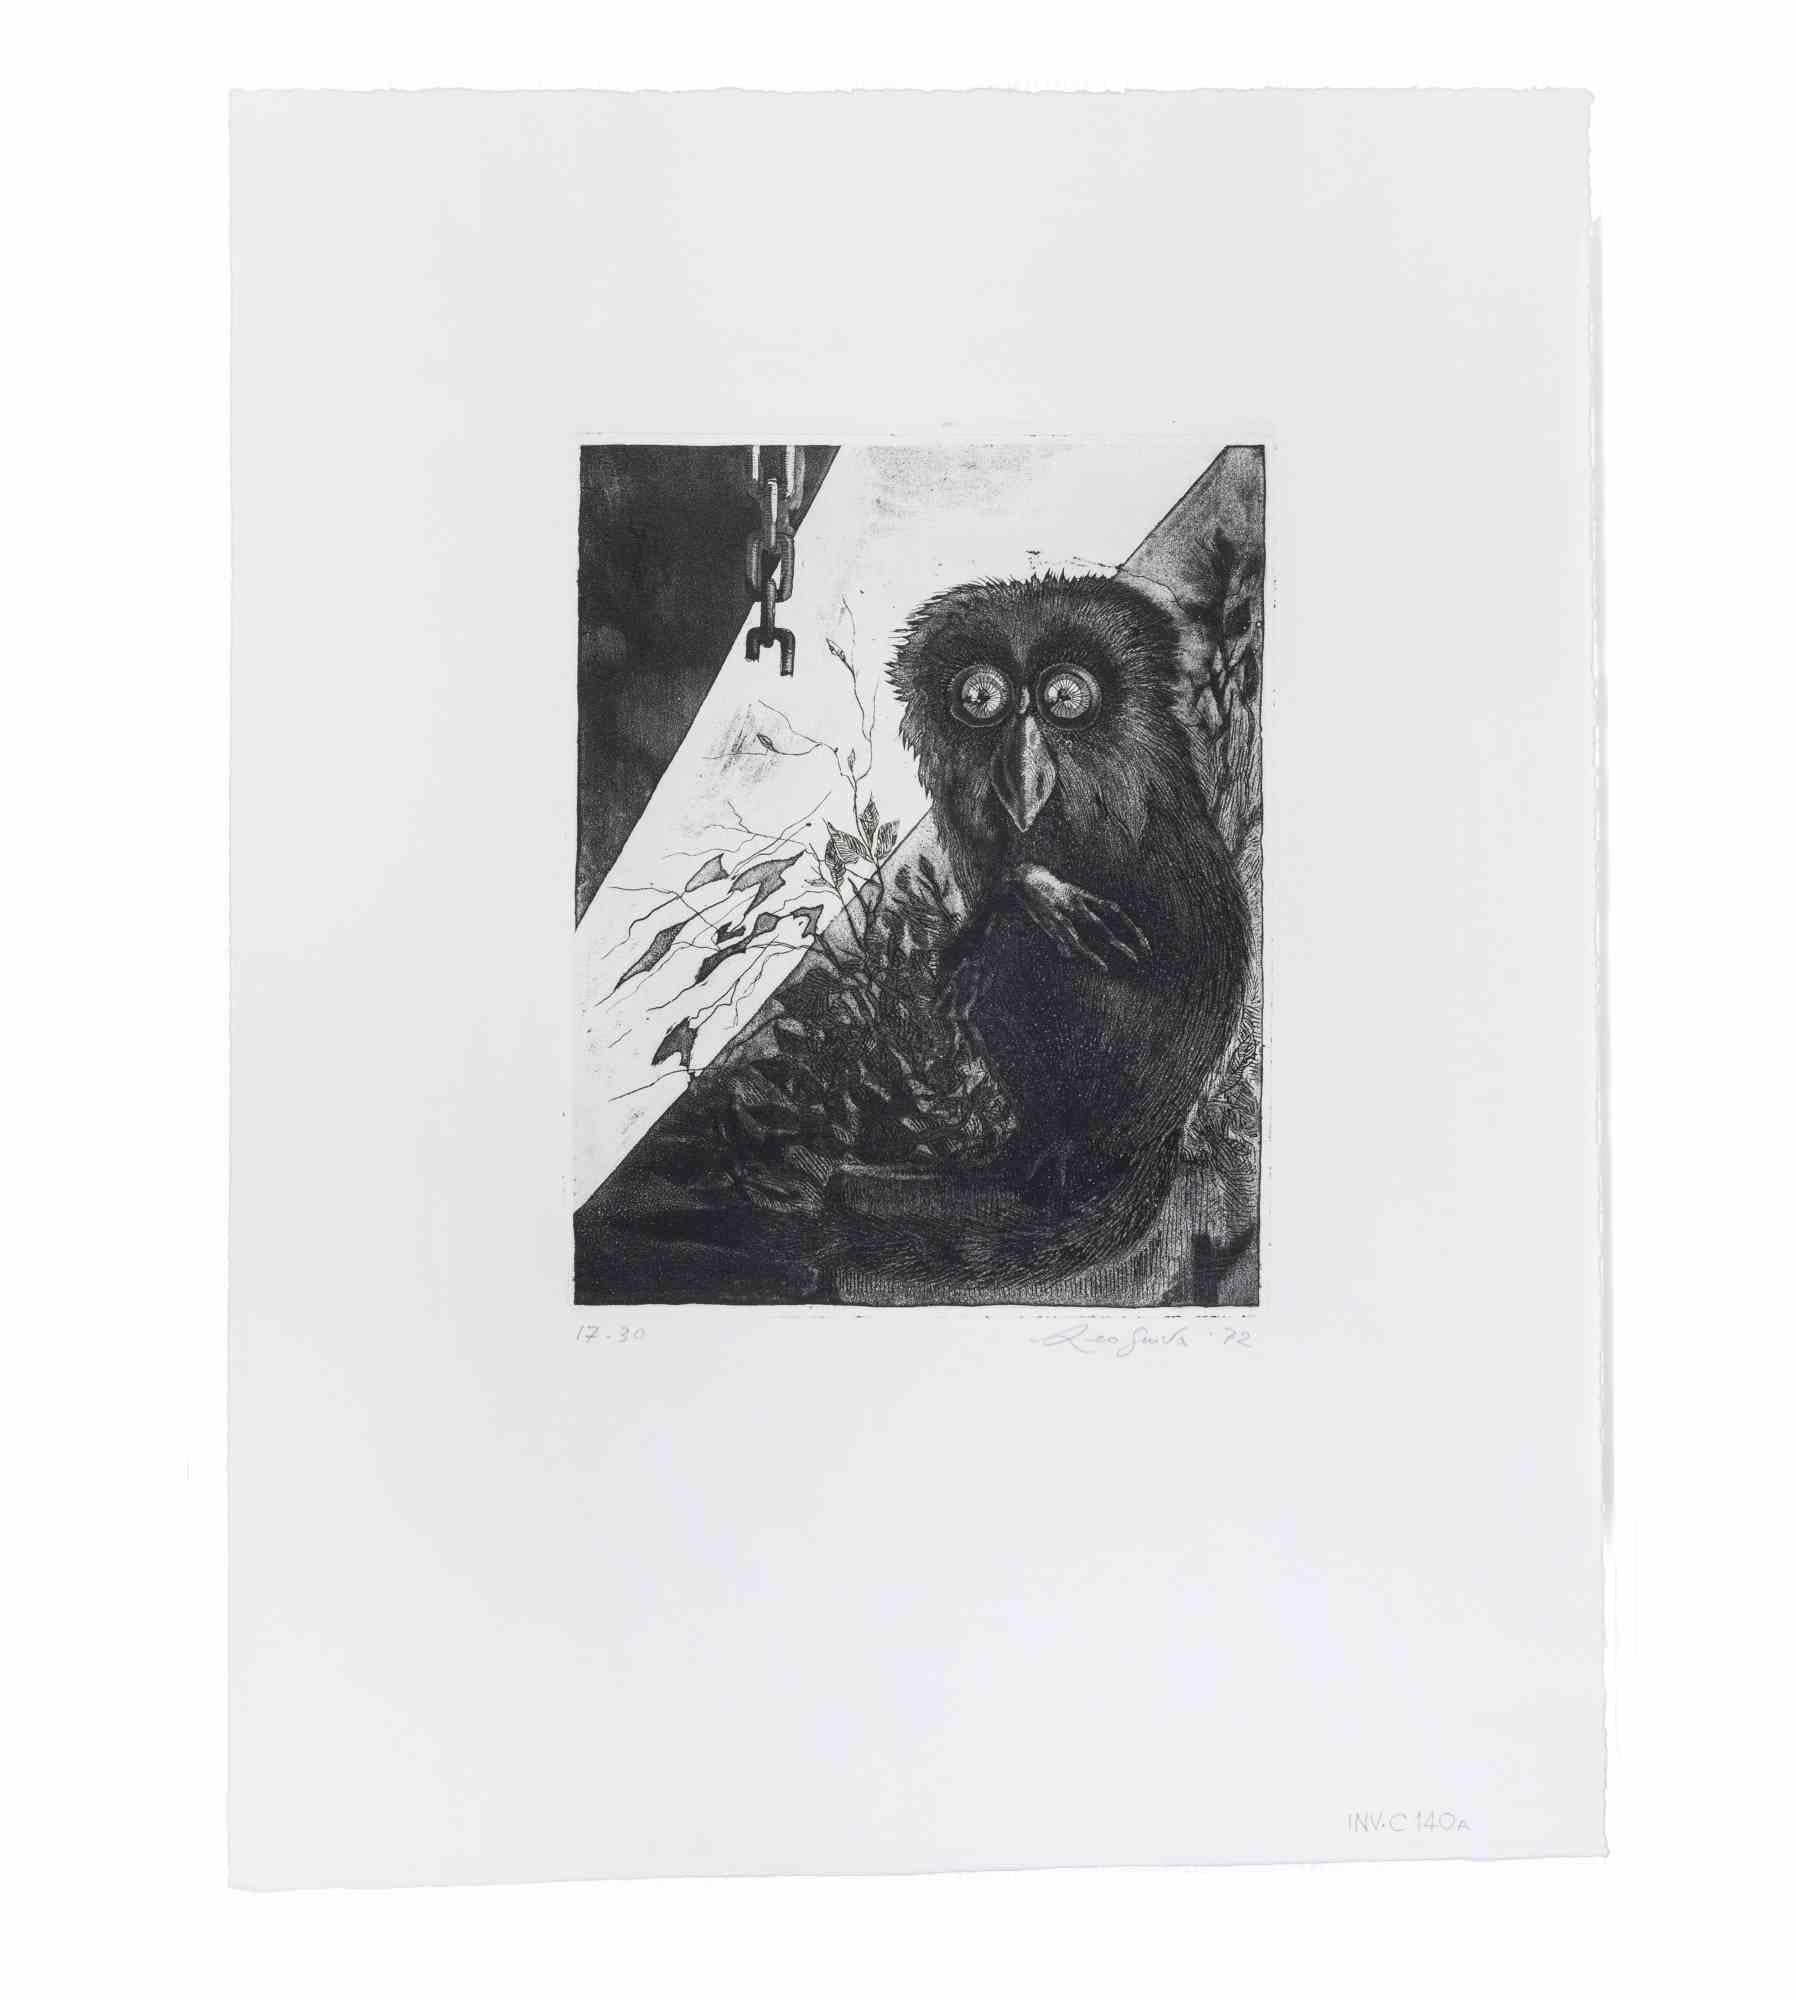 Dark Lemur ist eine Radierung von Leo Guida aus den 1972er Jahren.

Guter Zustand, handsigniert, mit Bleistift datiert.

Als Künstler, der ein Gespür für aktuelle Themen, künstlerische Strömungen und historische Techniken hat, konnte Leo Guida